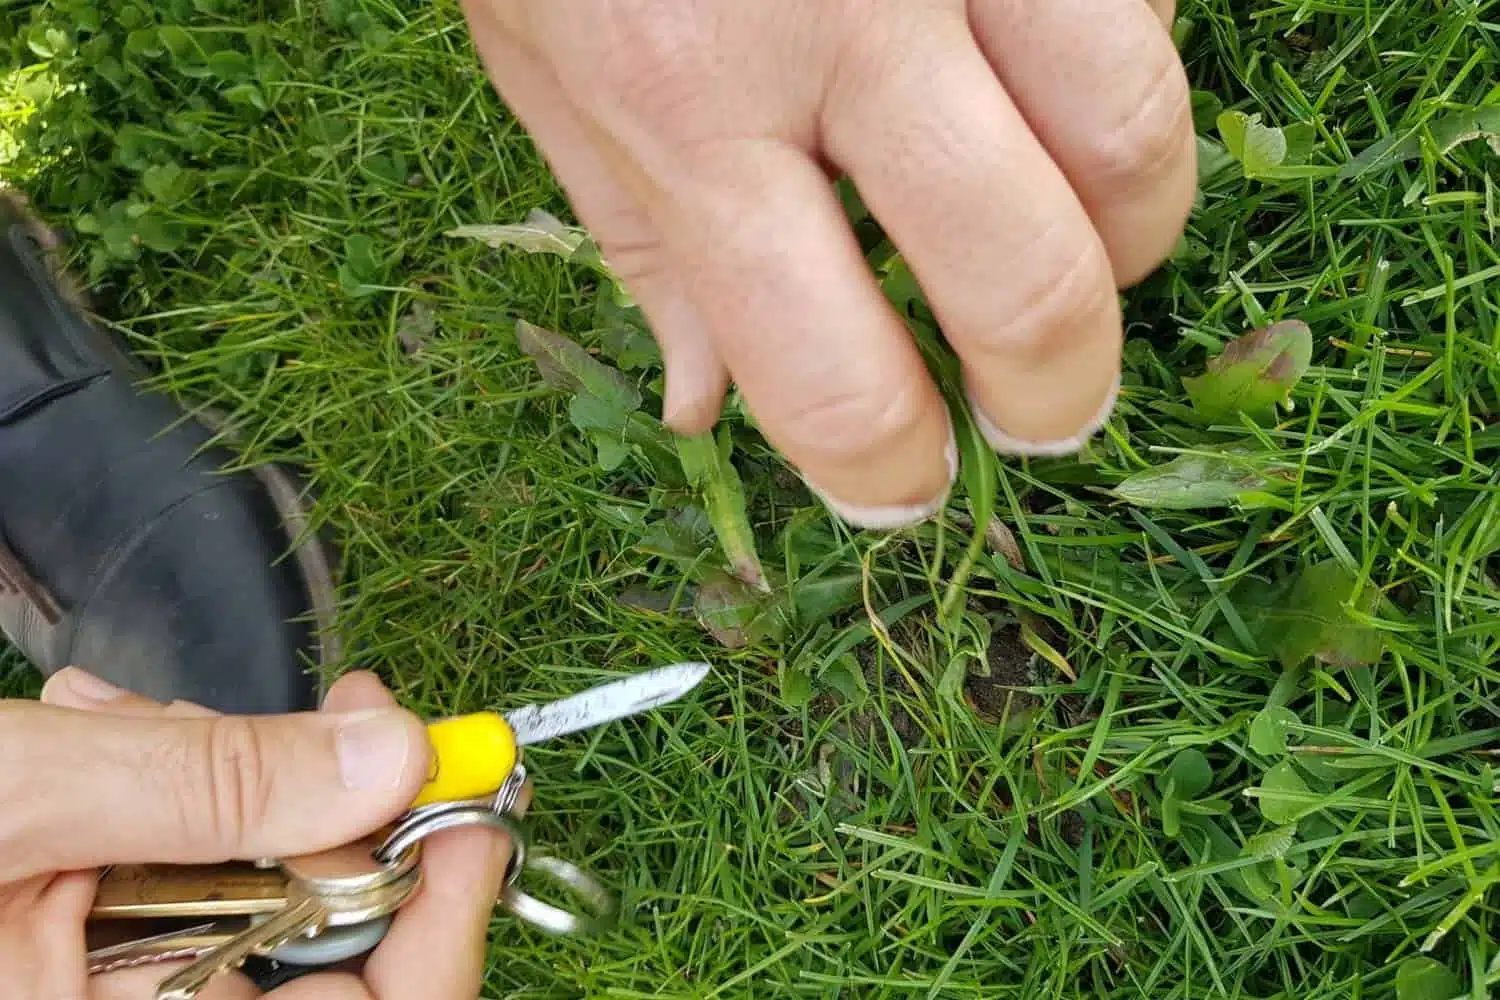 Comment éviter les mauvaises herbes et l’invasion de nuisibles dans votre gazon